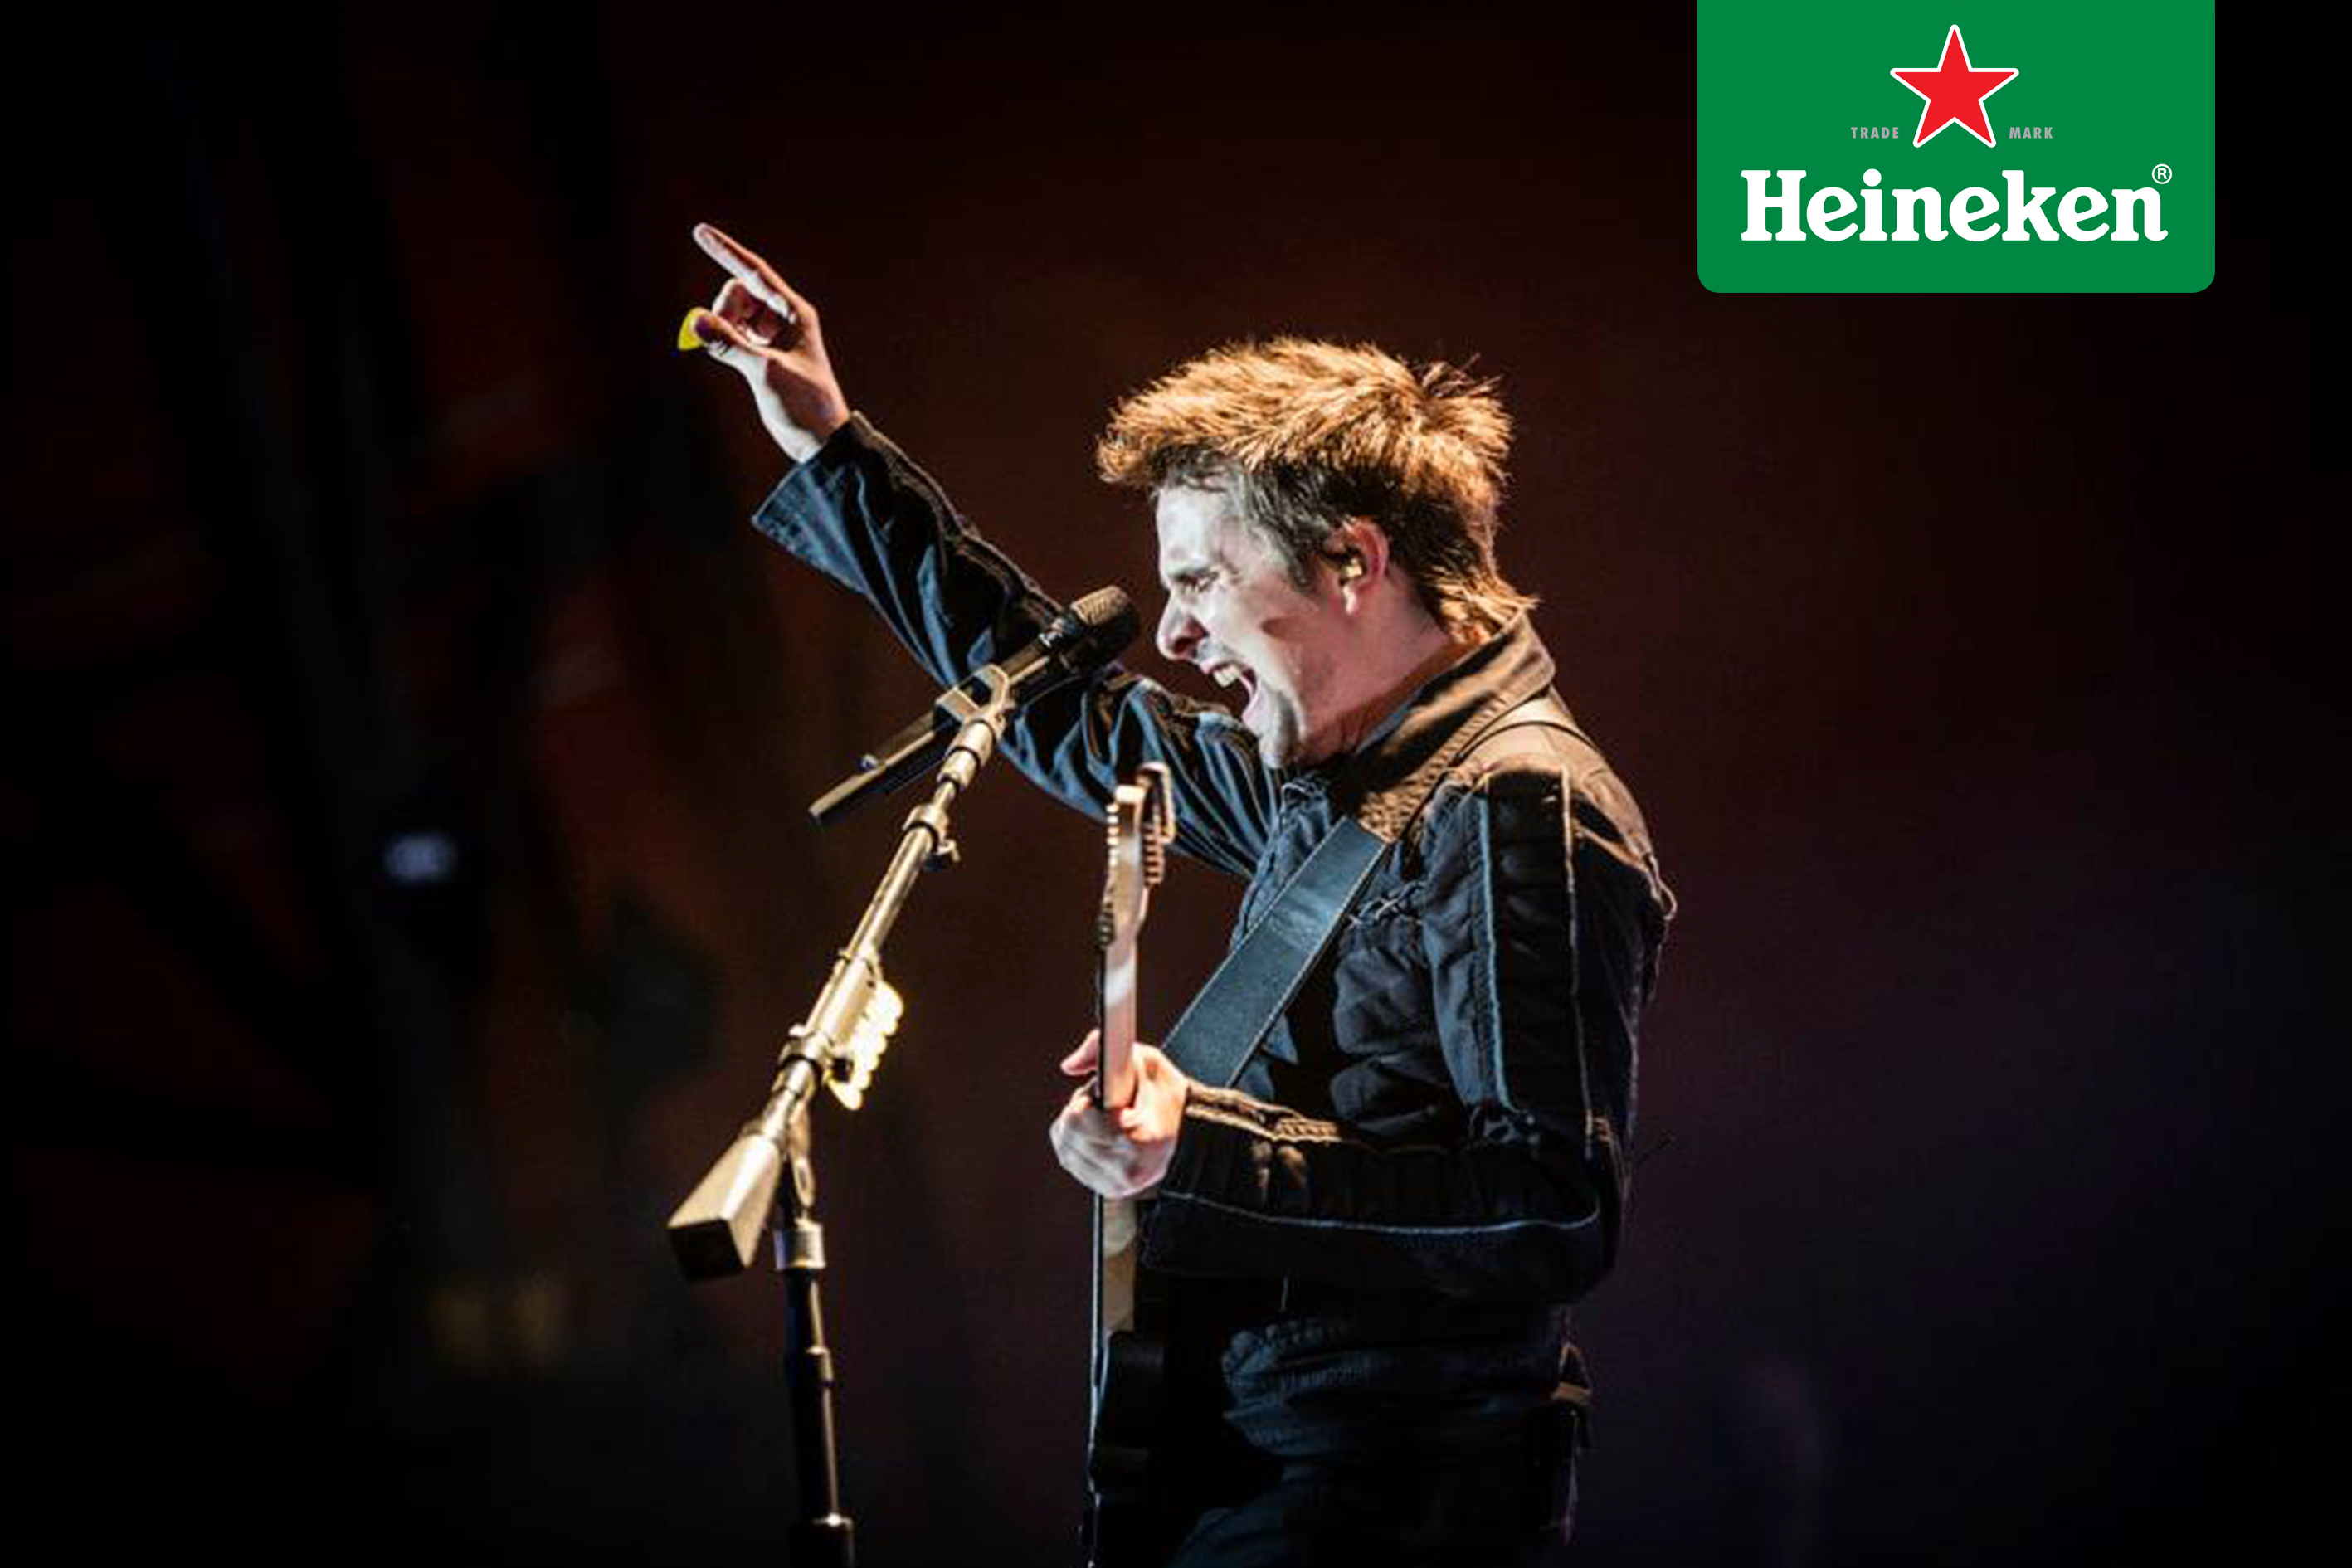 Les contamos todo lo que ha pasado en Roskilde Festival 2015 gracias a #HeinekenLife